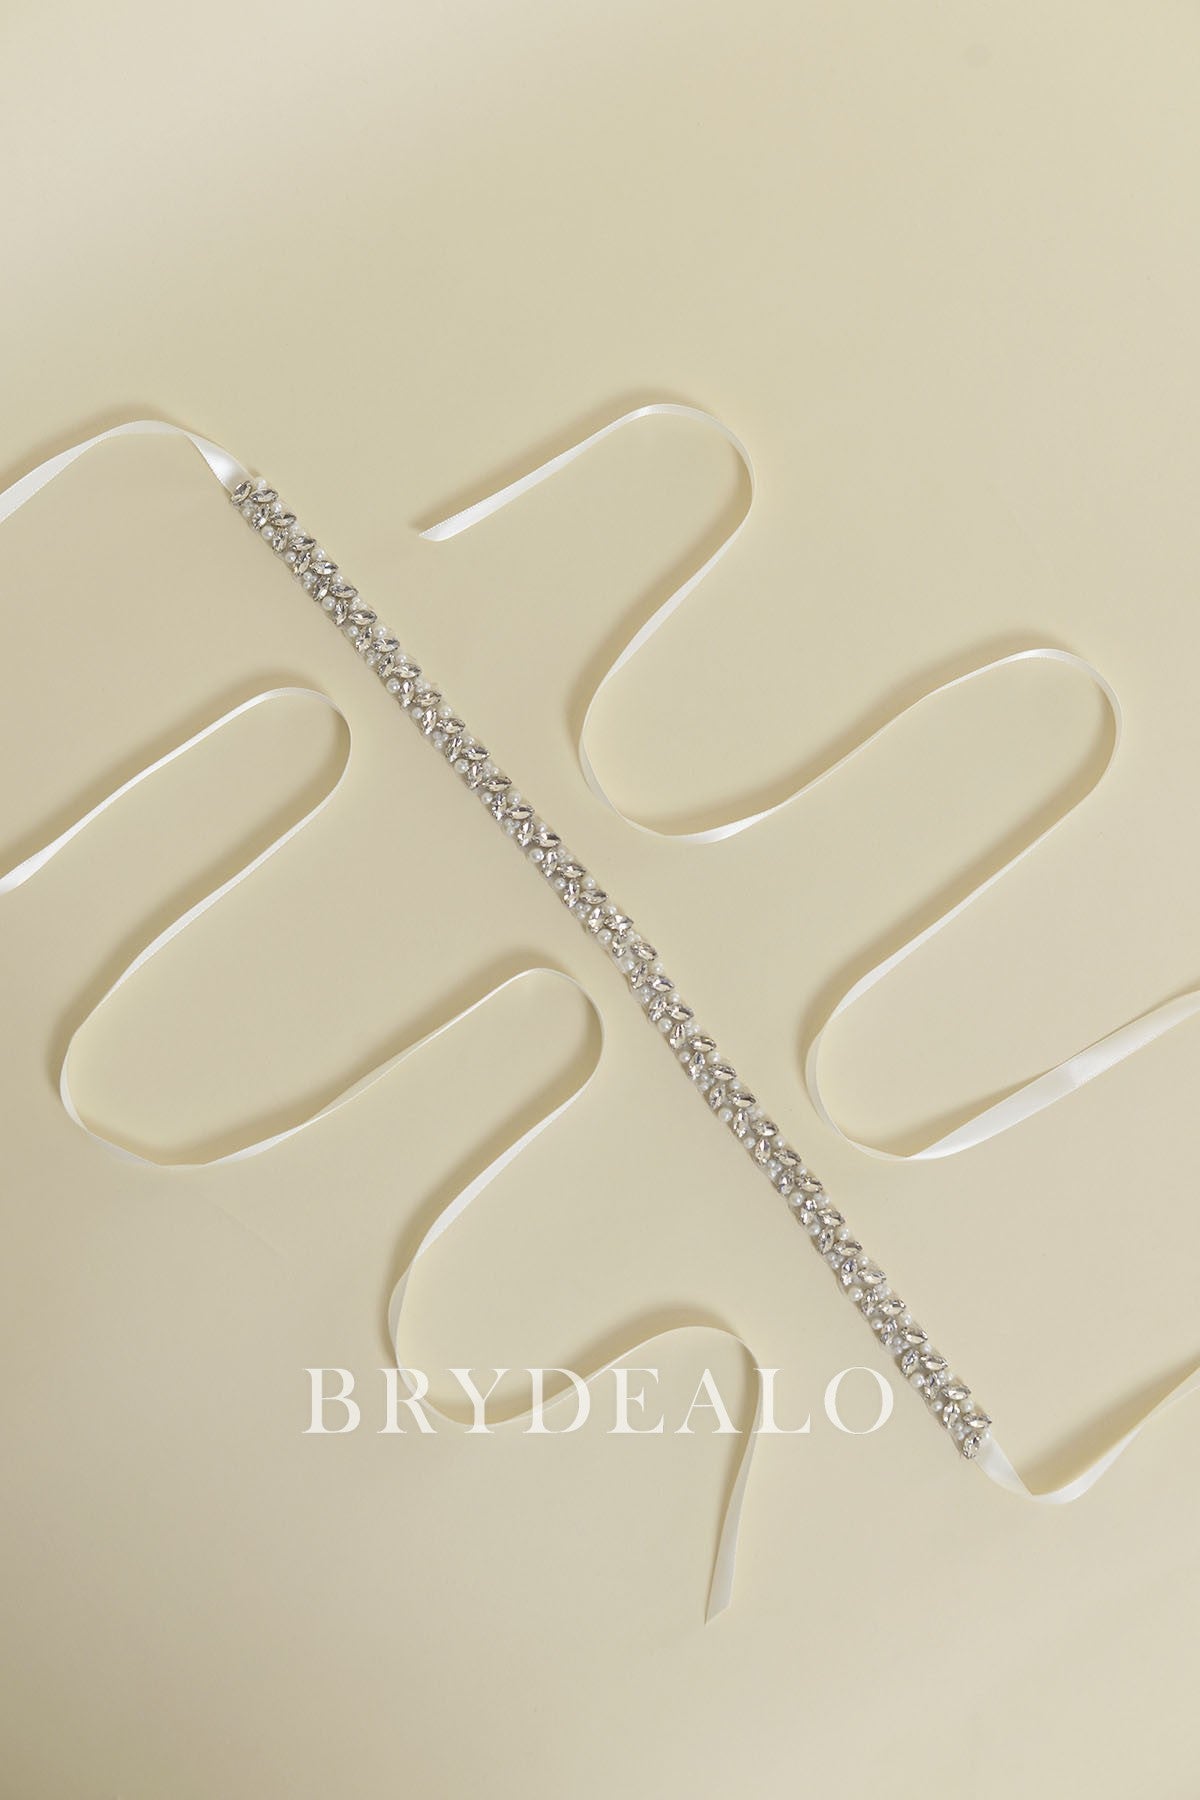 Elaborate Crystals Pearls Ties Bridal Belt for SALE